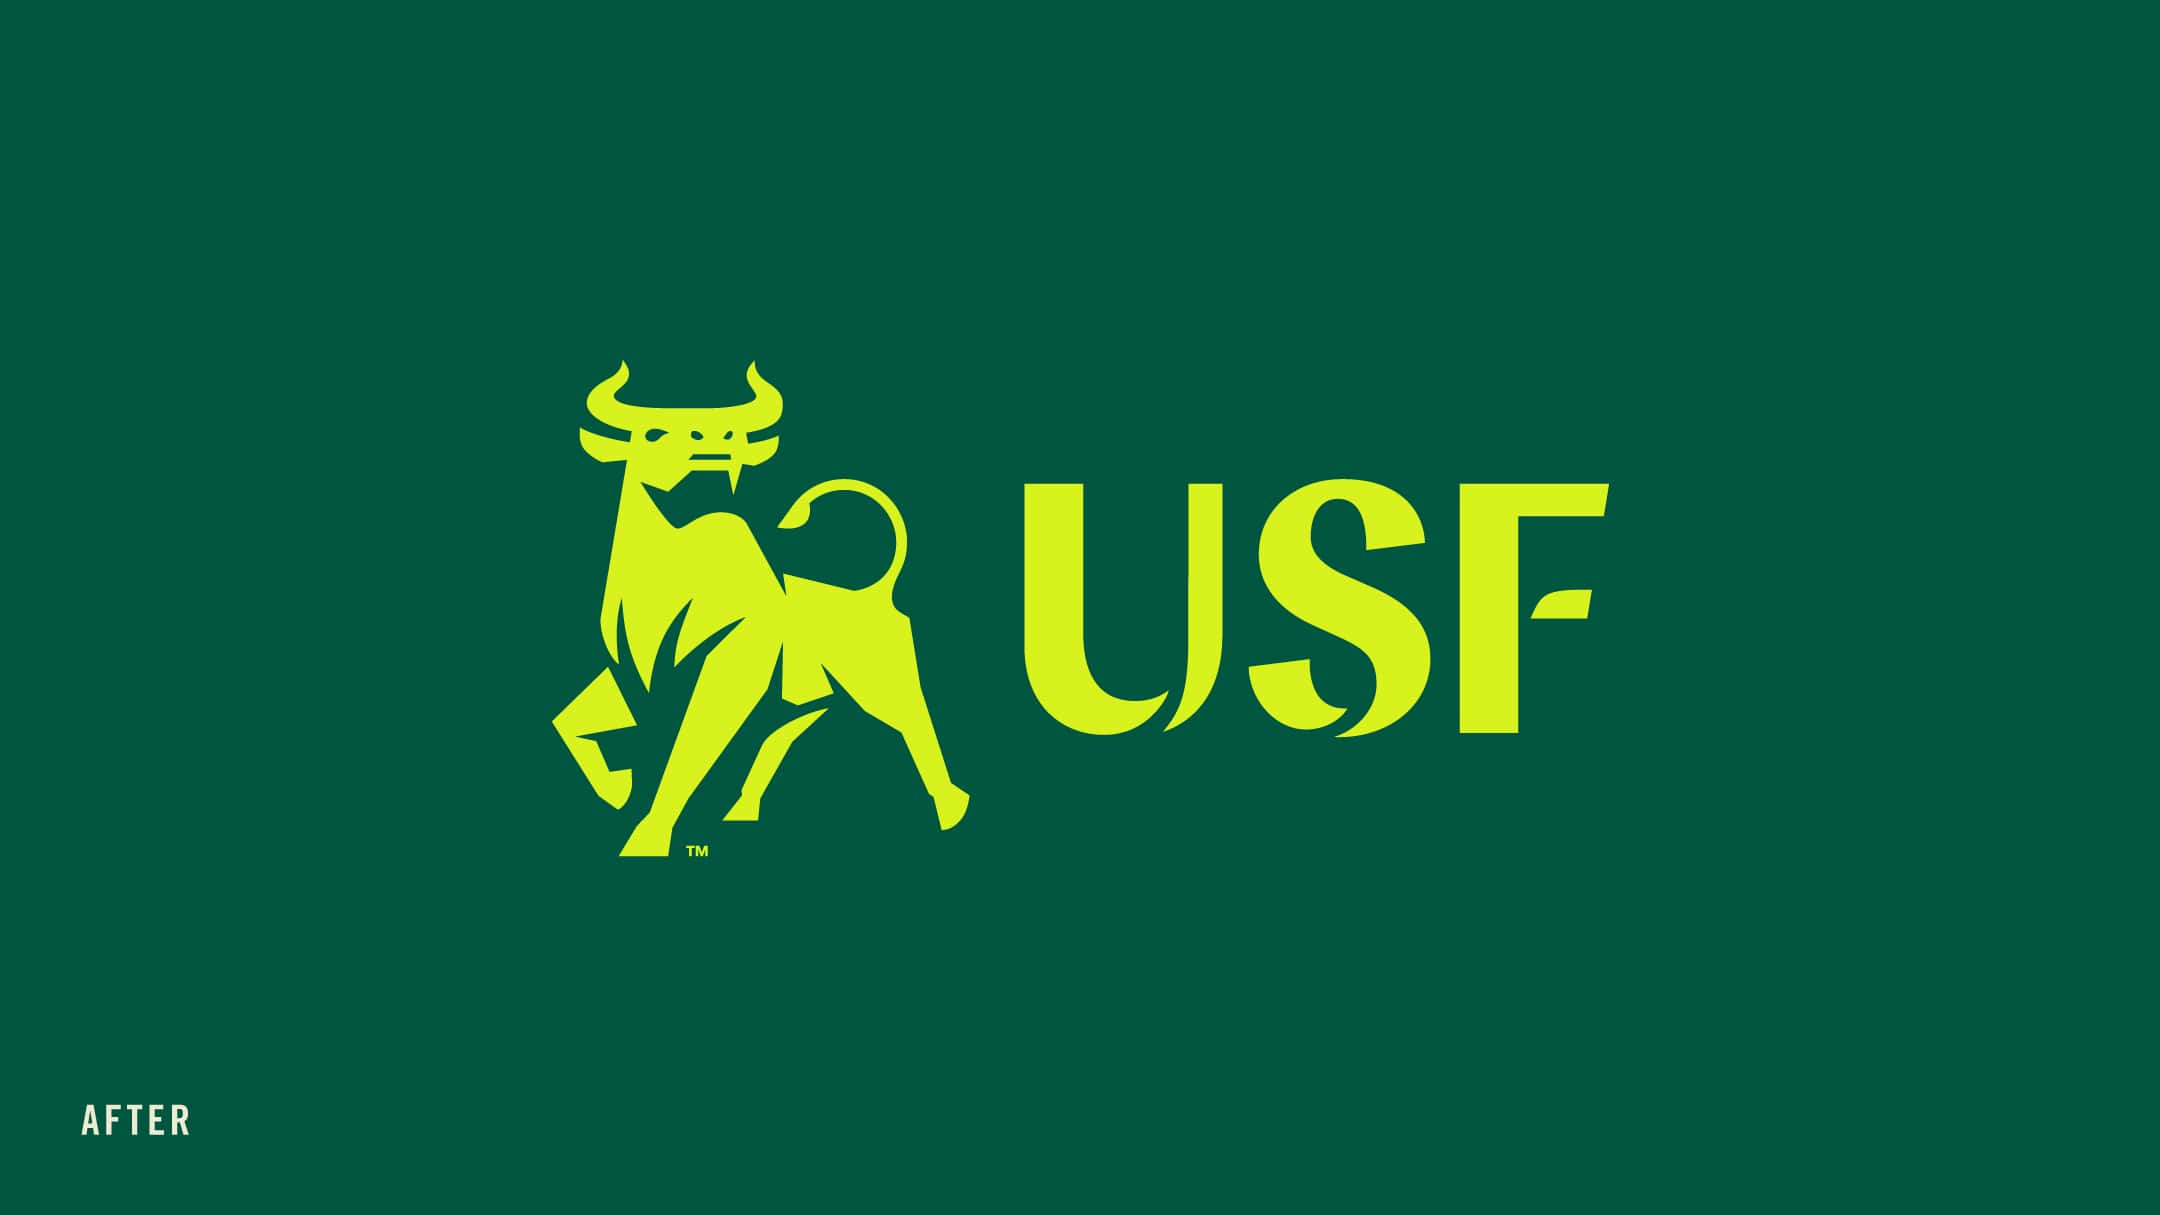 New USF Academics Logo